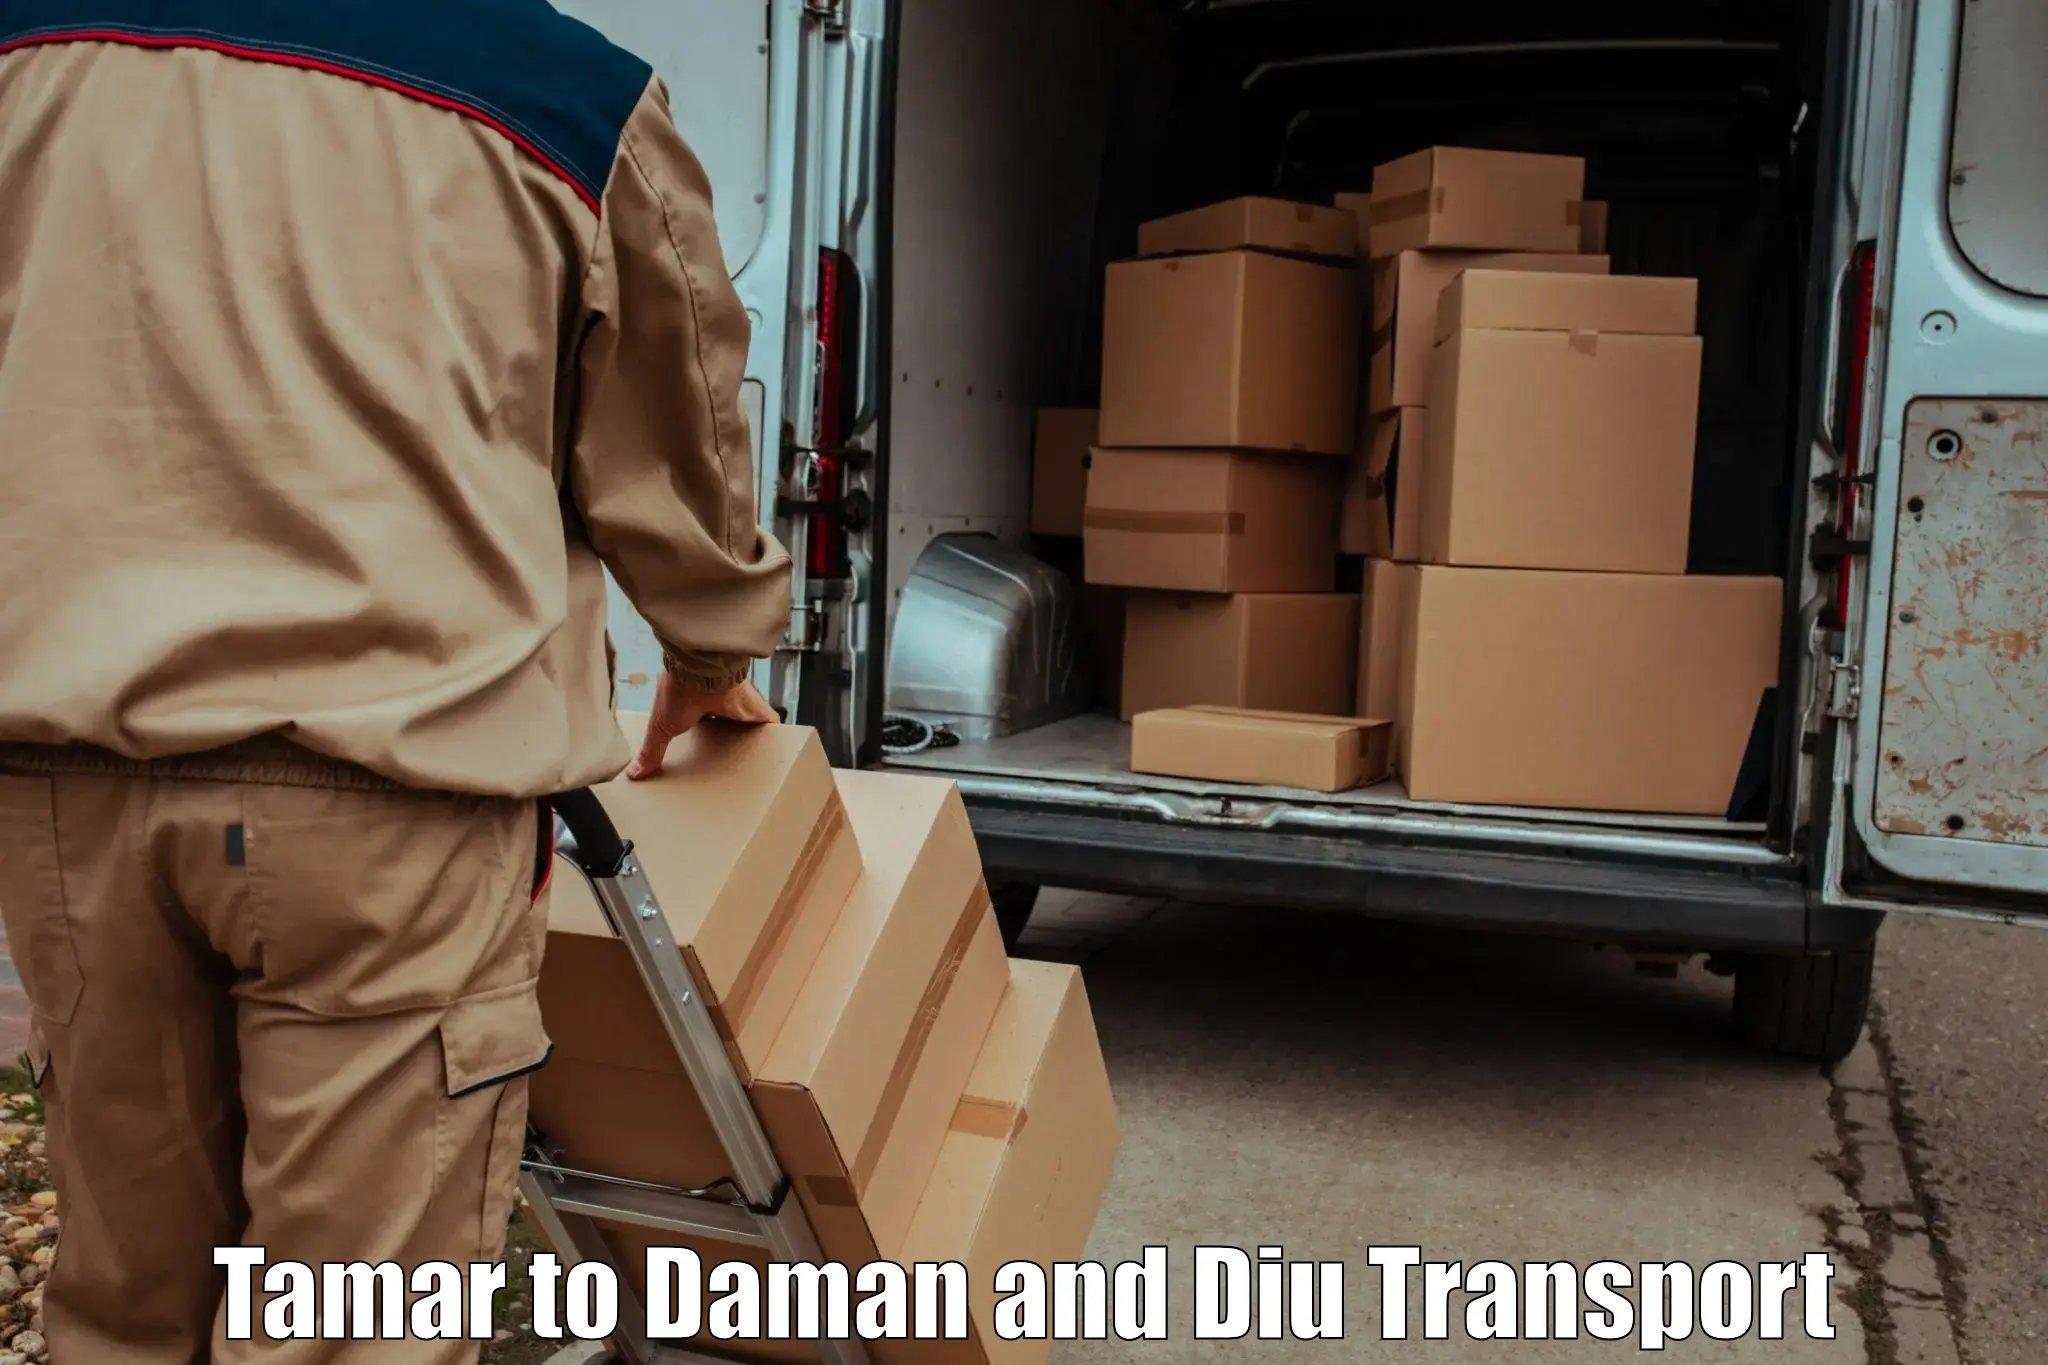 Furniture transport service Tamar to Daman and Diu